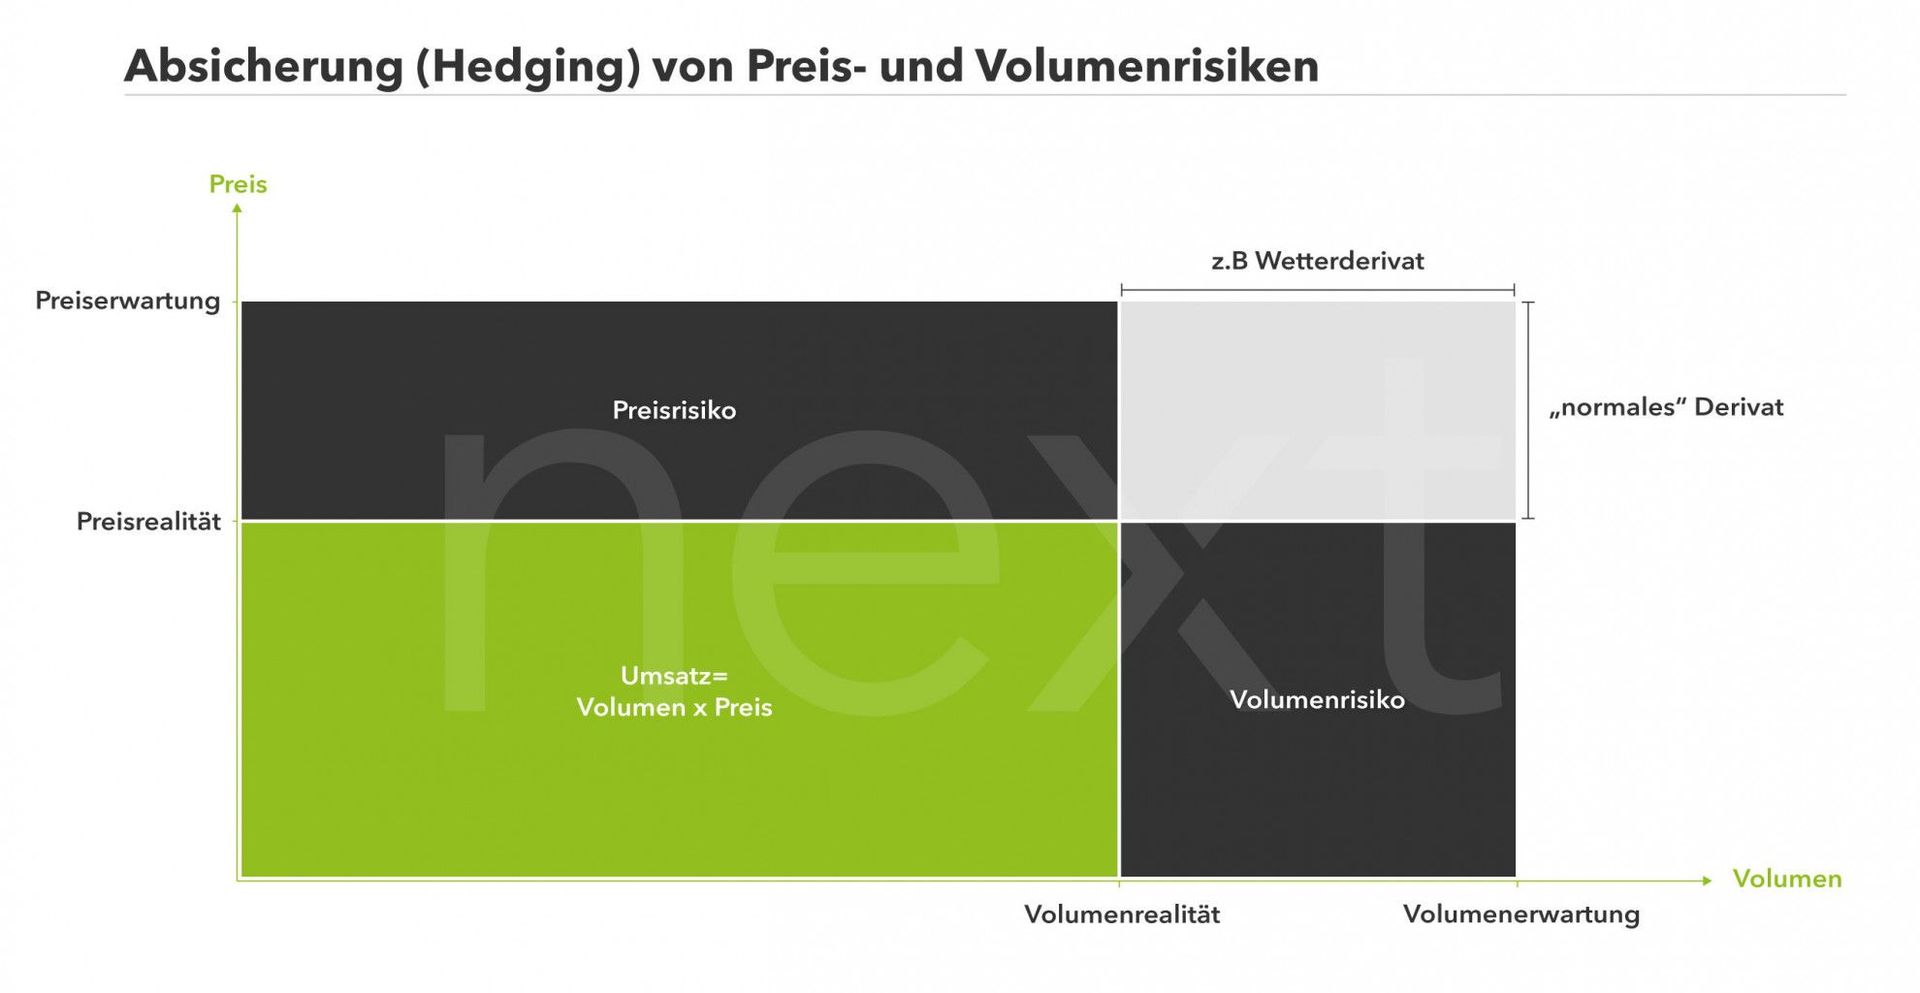 Schematische Darstellung des Hedgings am Strommarkt für Preis- und Volumenrisiken.